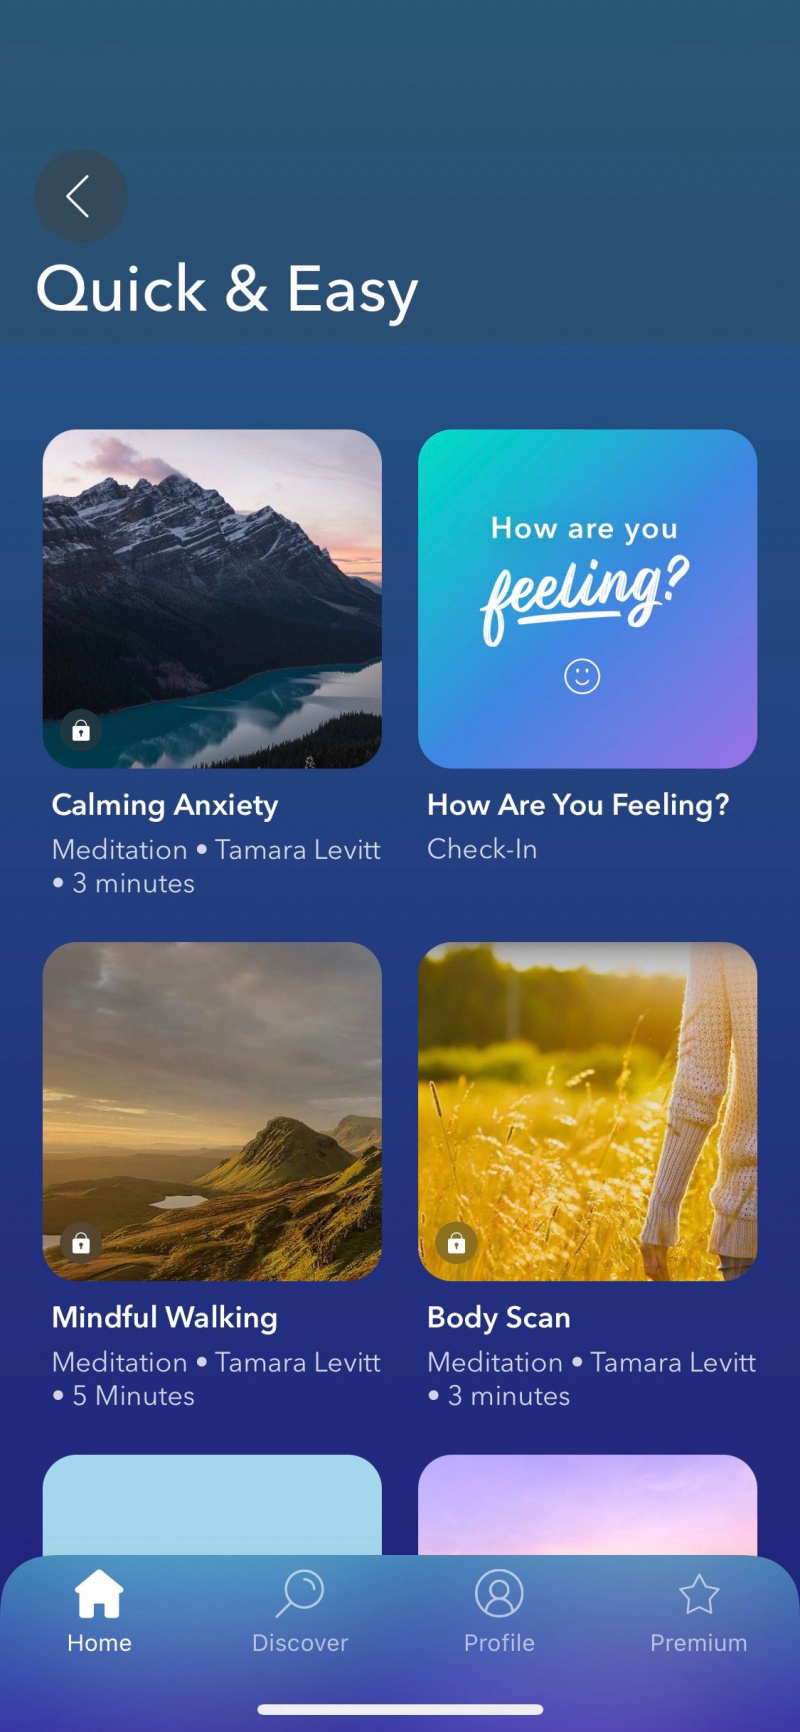   Captura de tela do aplicativo Calm mostrando meditações rápidas e fáceis